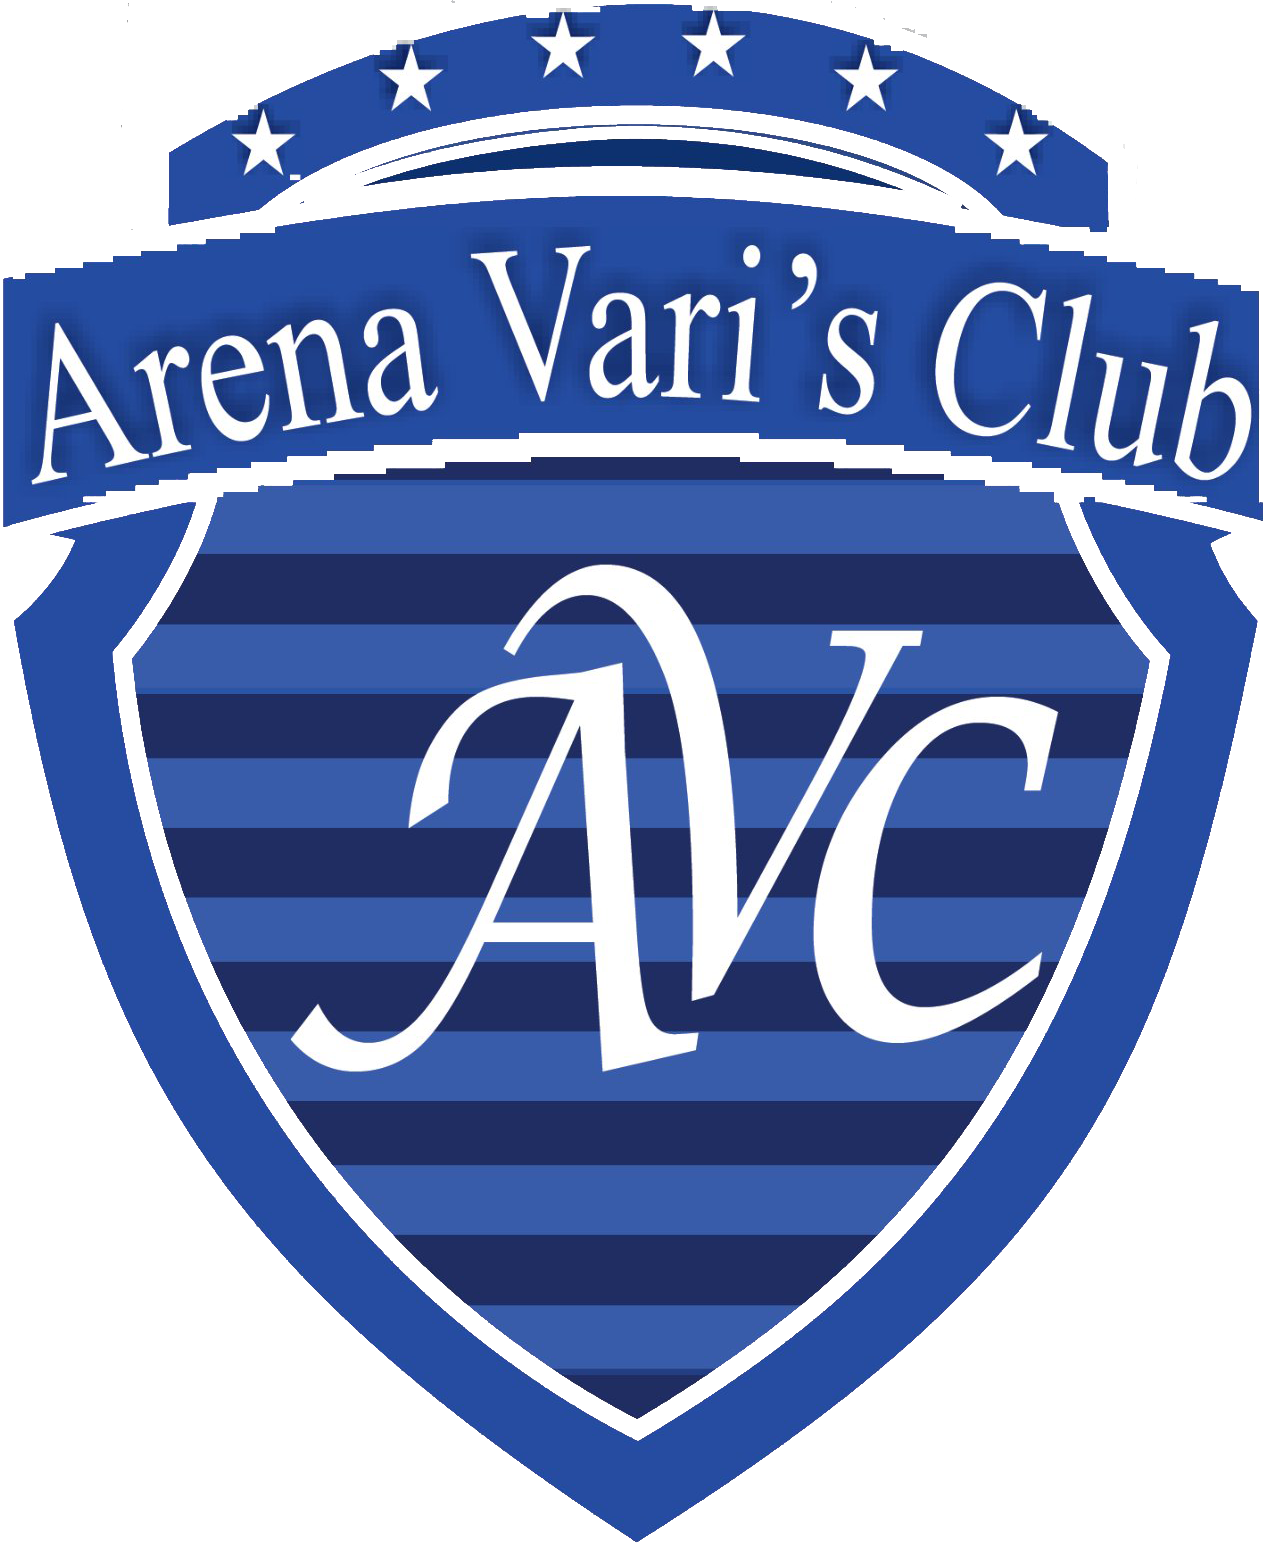 Arena Varis Club